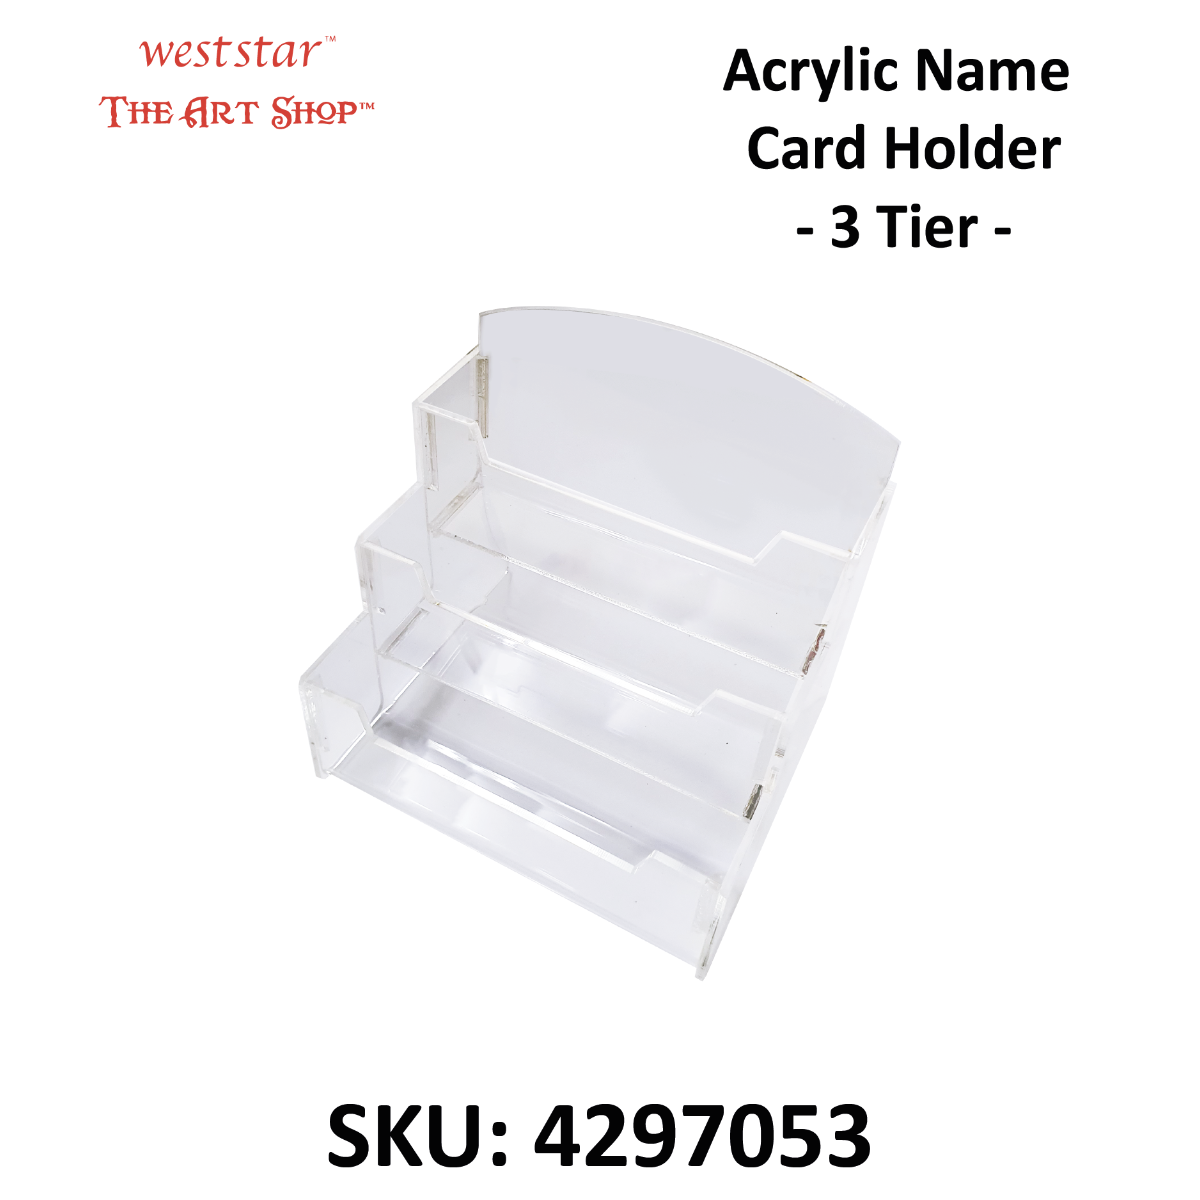 Acrylic Name  Card Holder | grp